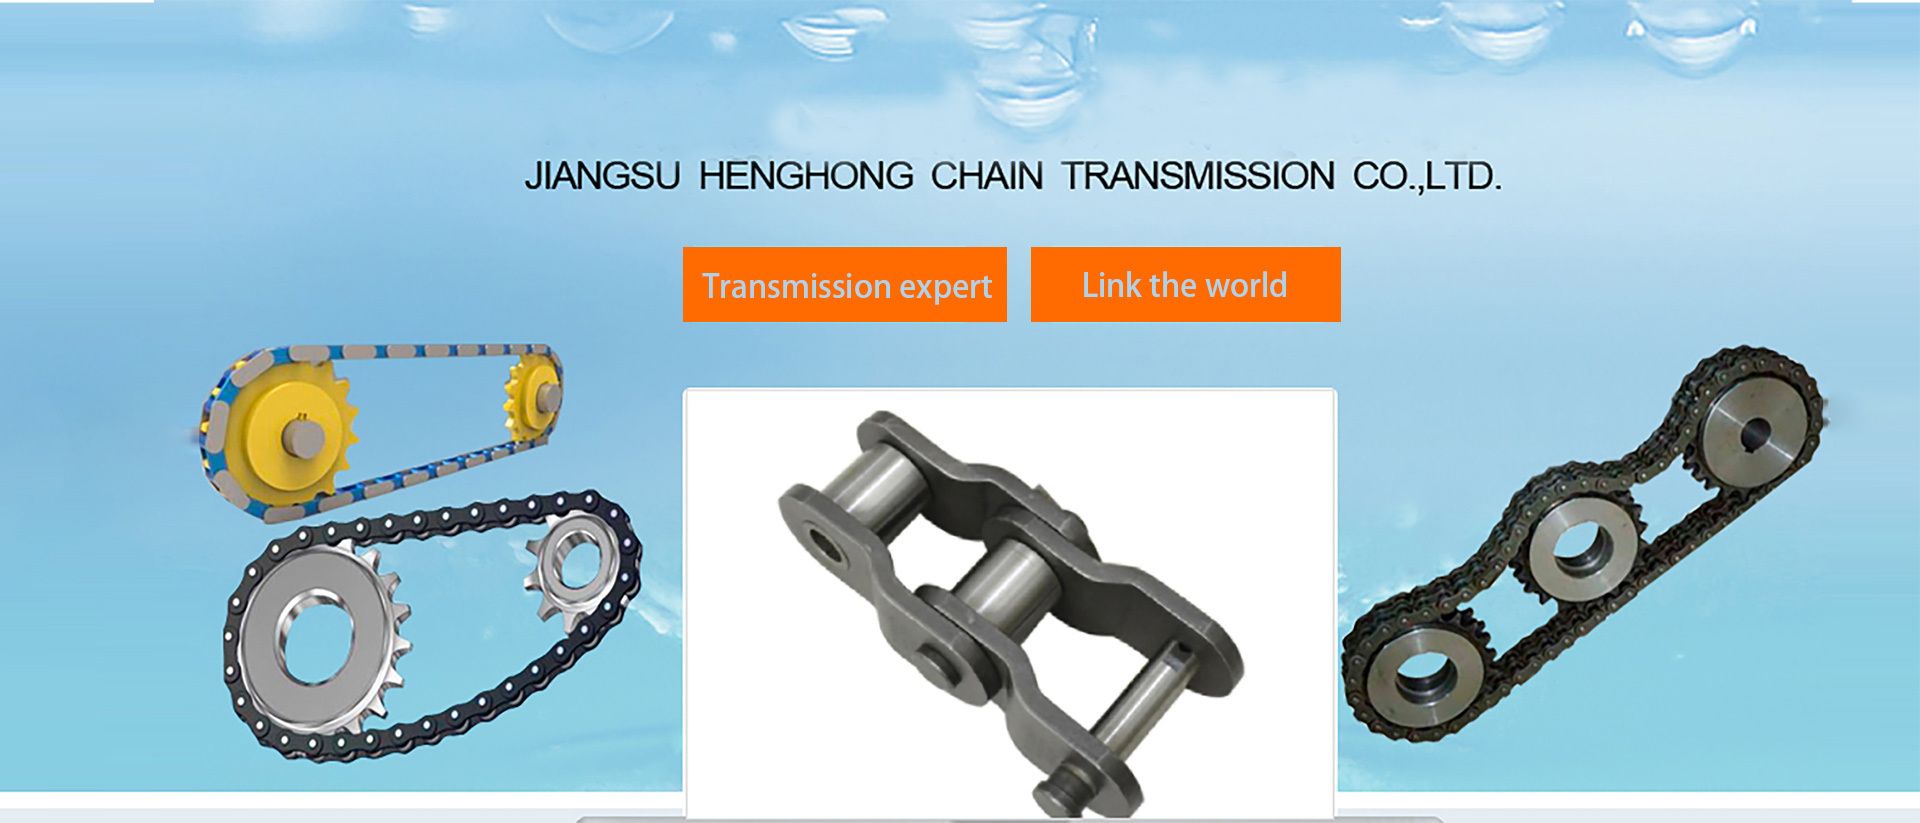 Jiangsu Henghong Chain Transmission Co., Ltd